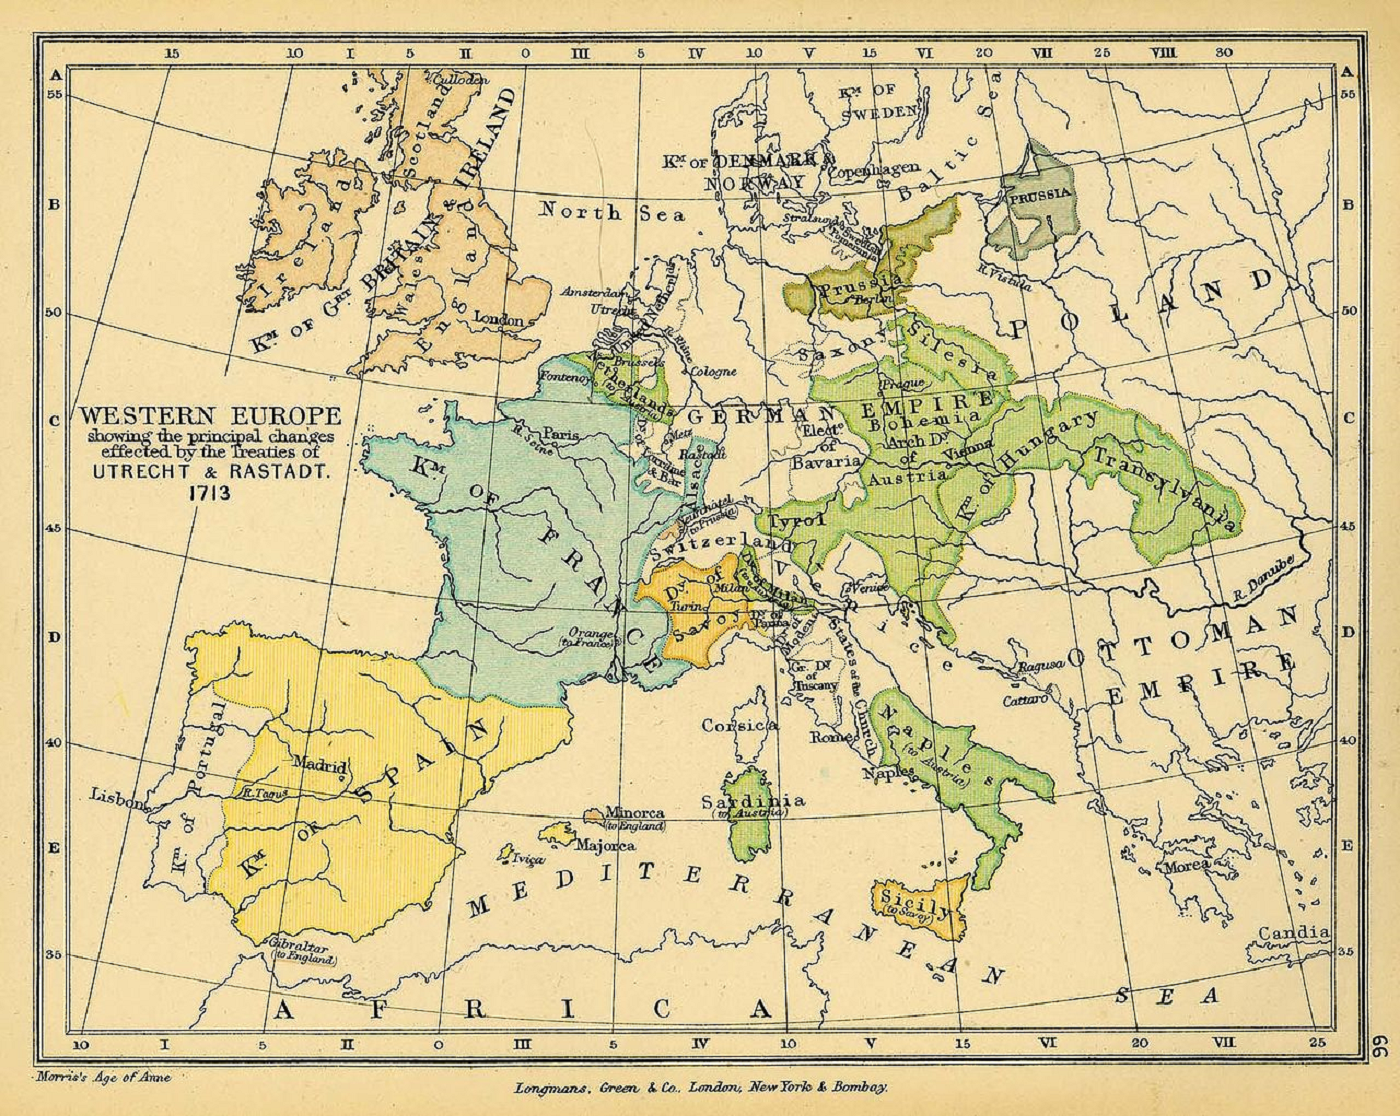 Tratado de Rastatt: Catalunya no consigue pasar al imperio austríaco